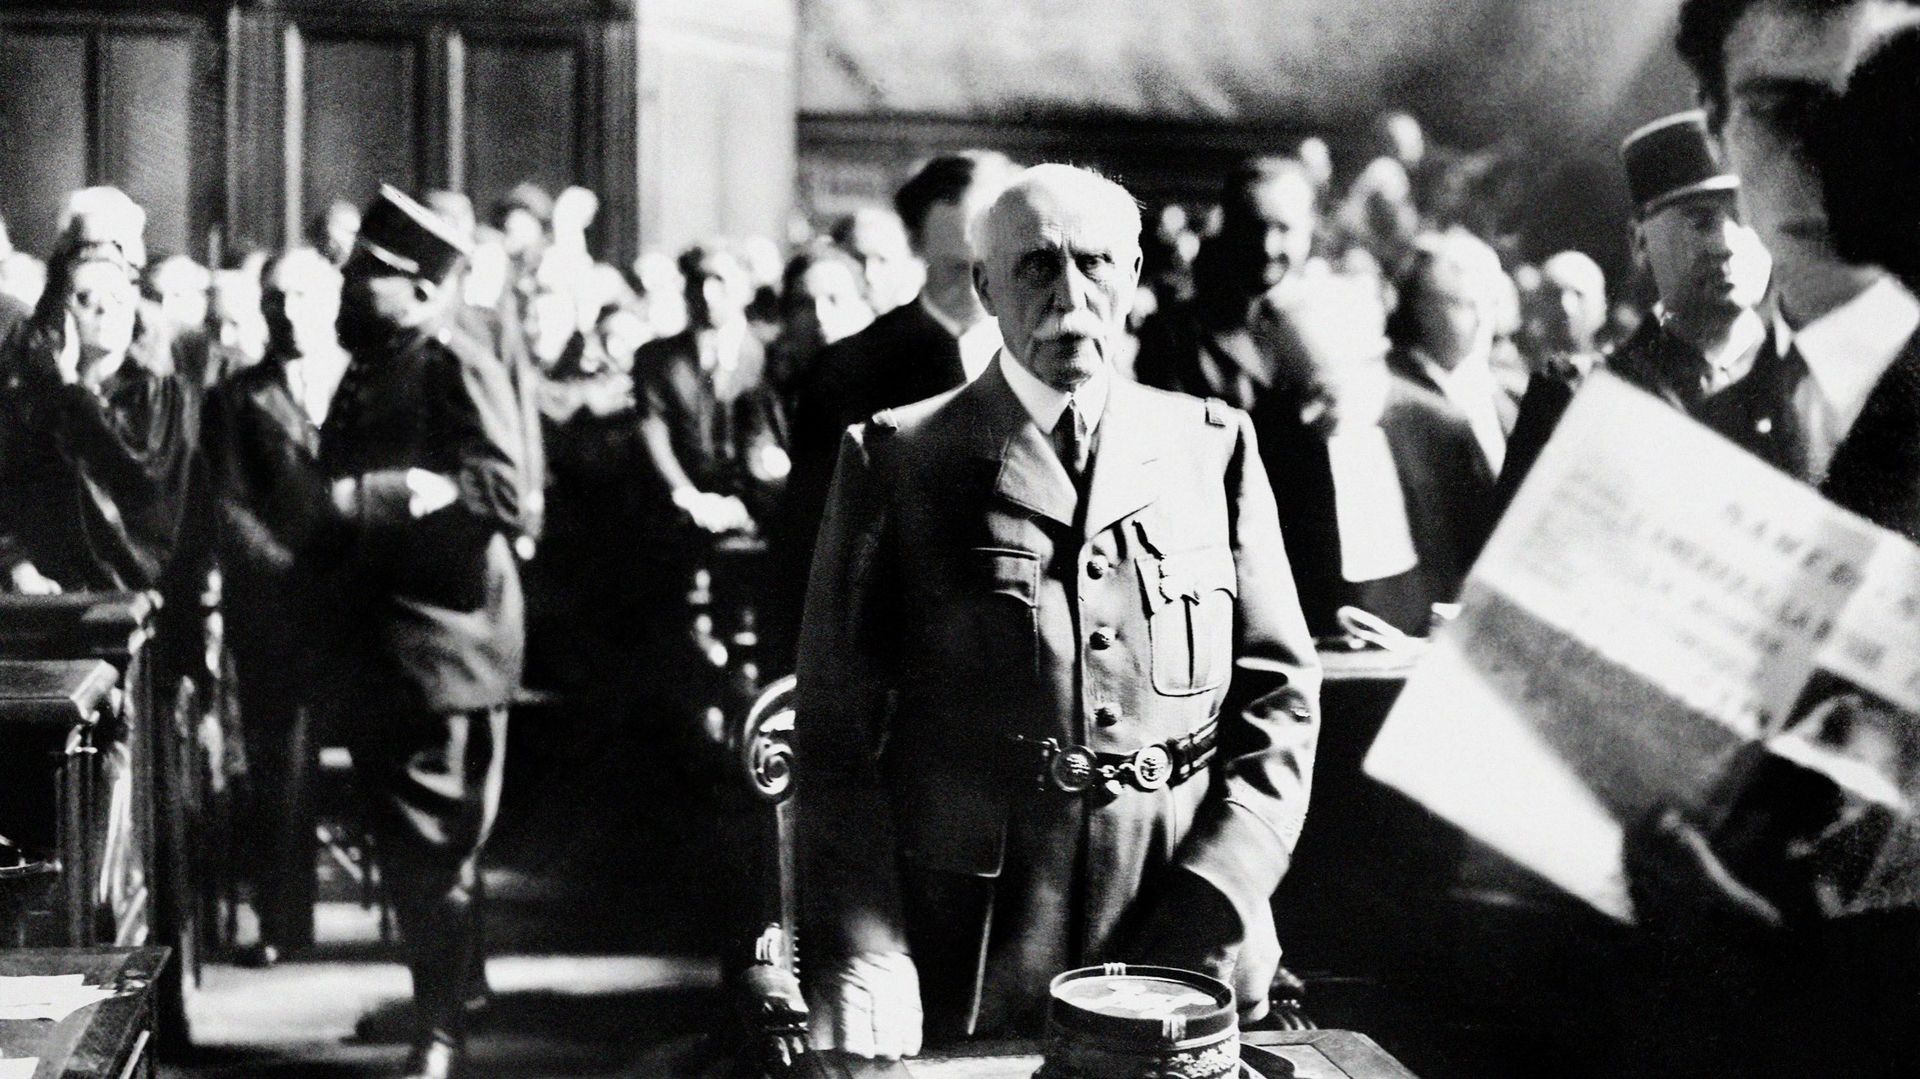 Parmi les archives concernées, certaines concernent le régime de Vichy, dirigé par le Maréchal Philippe Pétain (ici lors son procès à Paris en 1945).